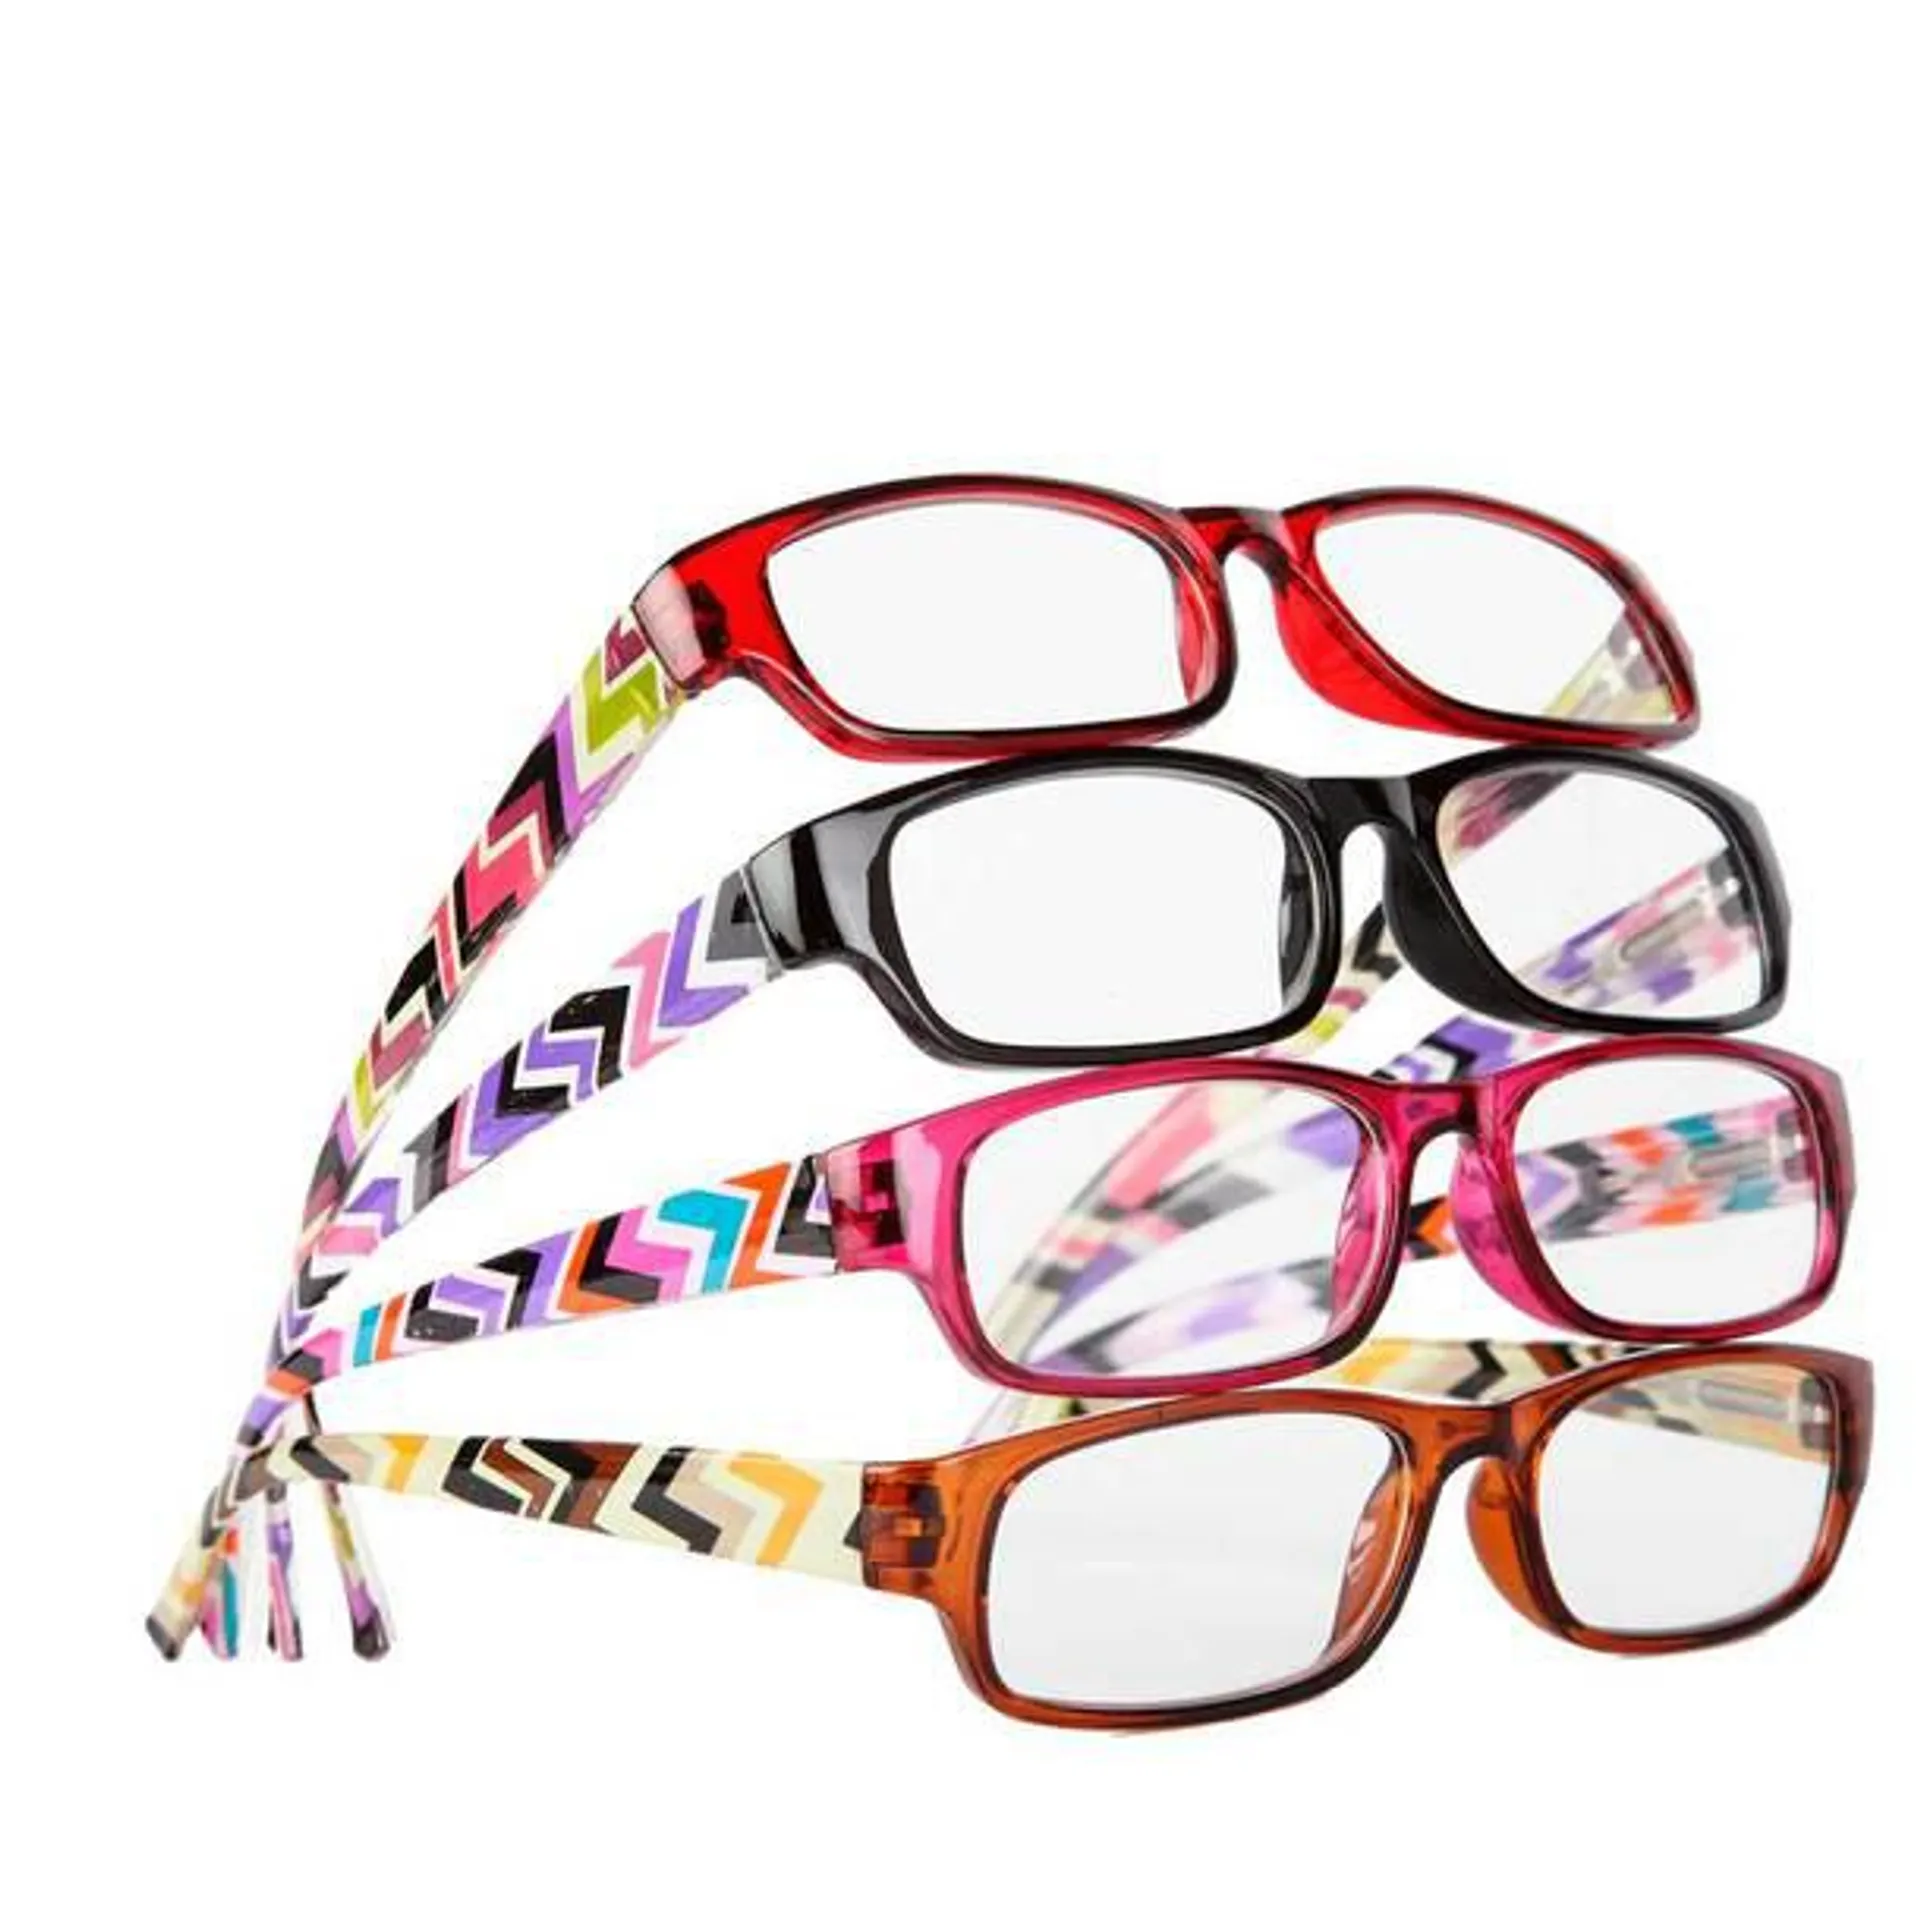 Fashion Reader Glasses (Set of 4)